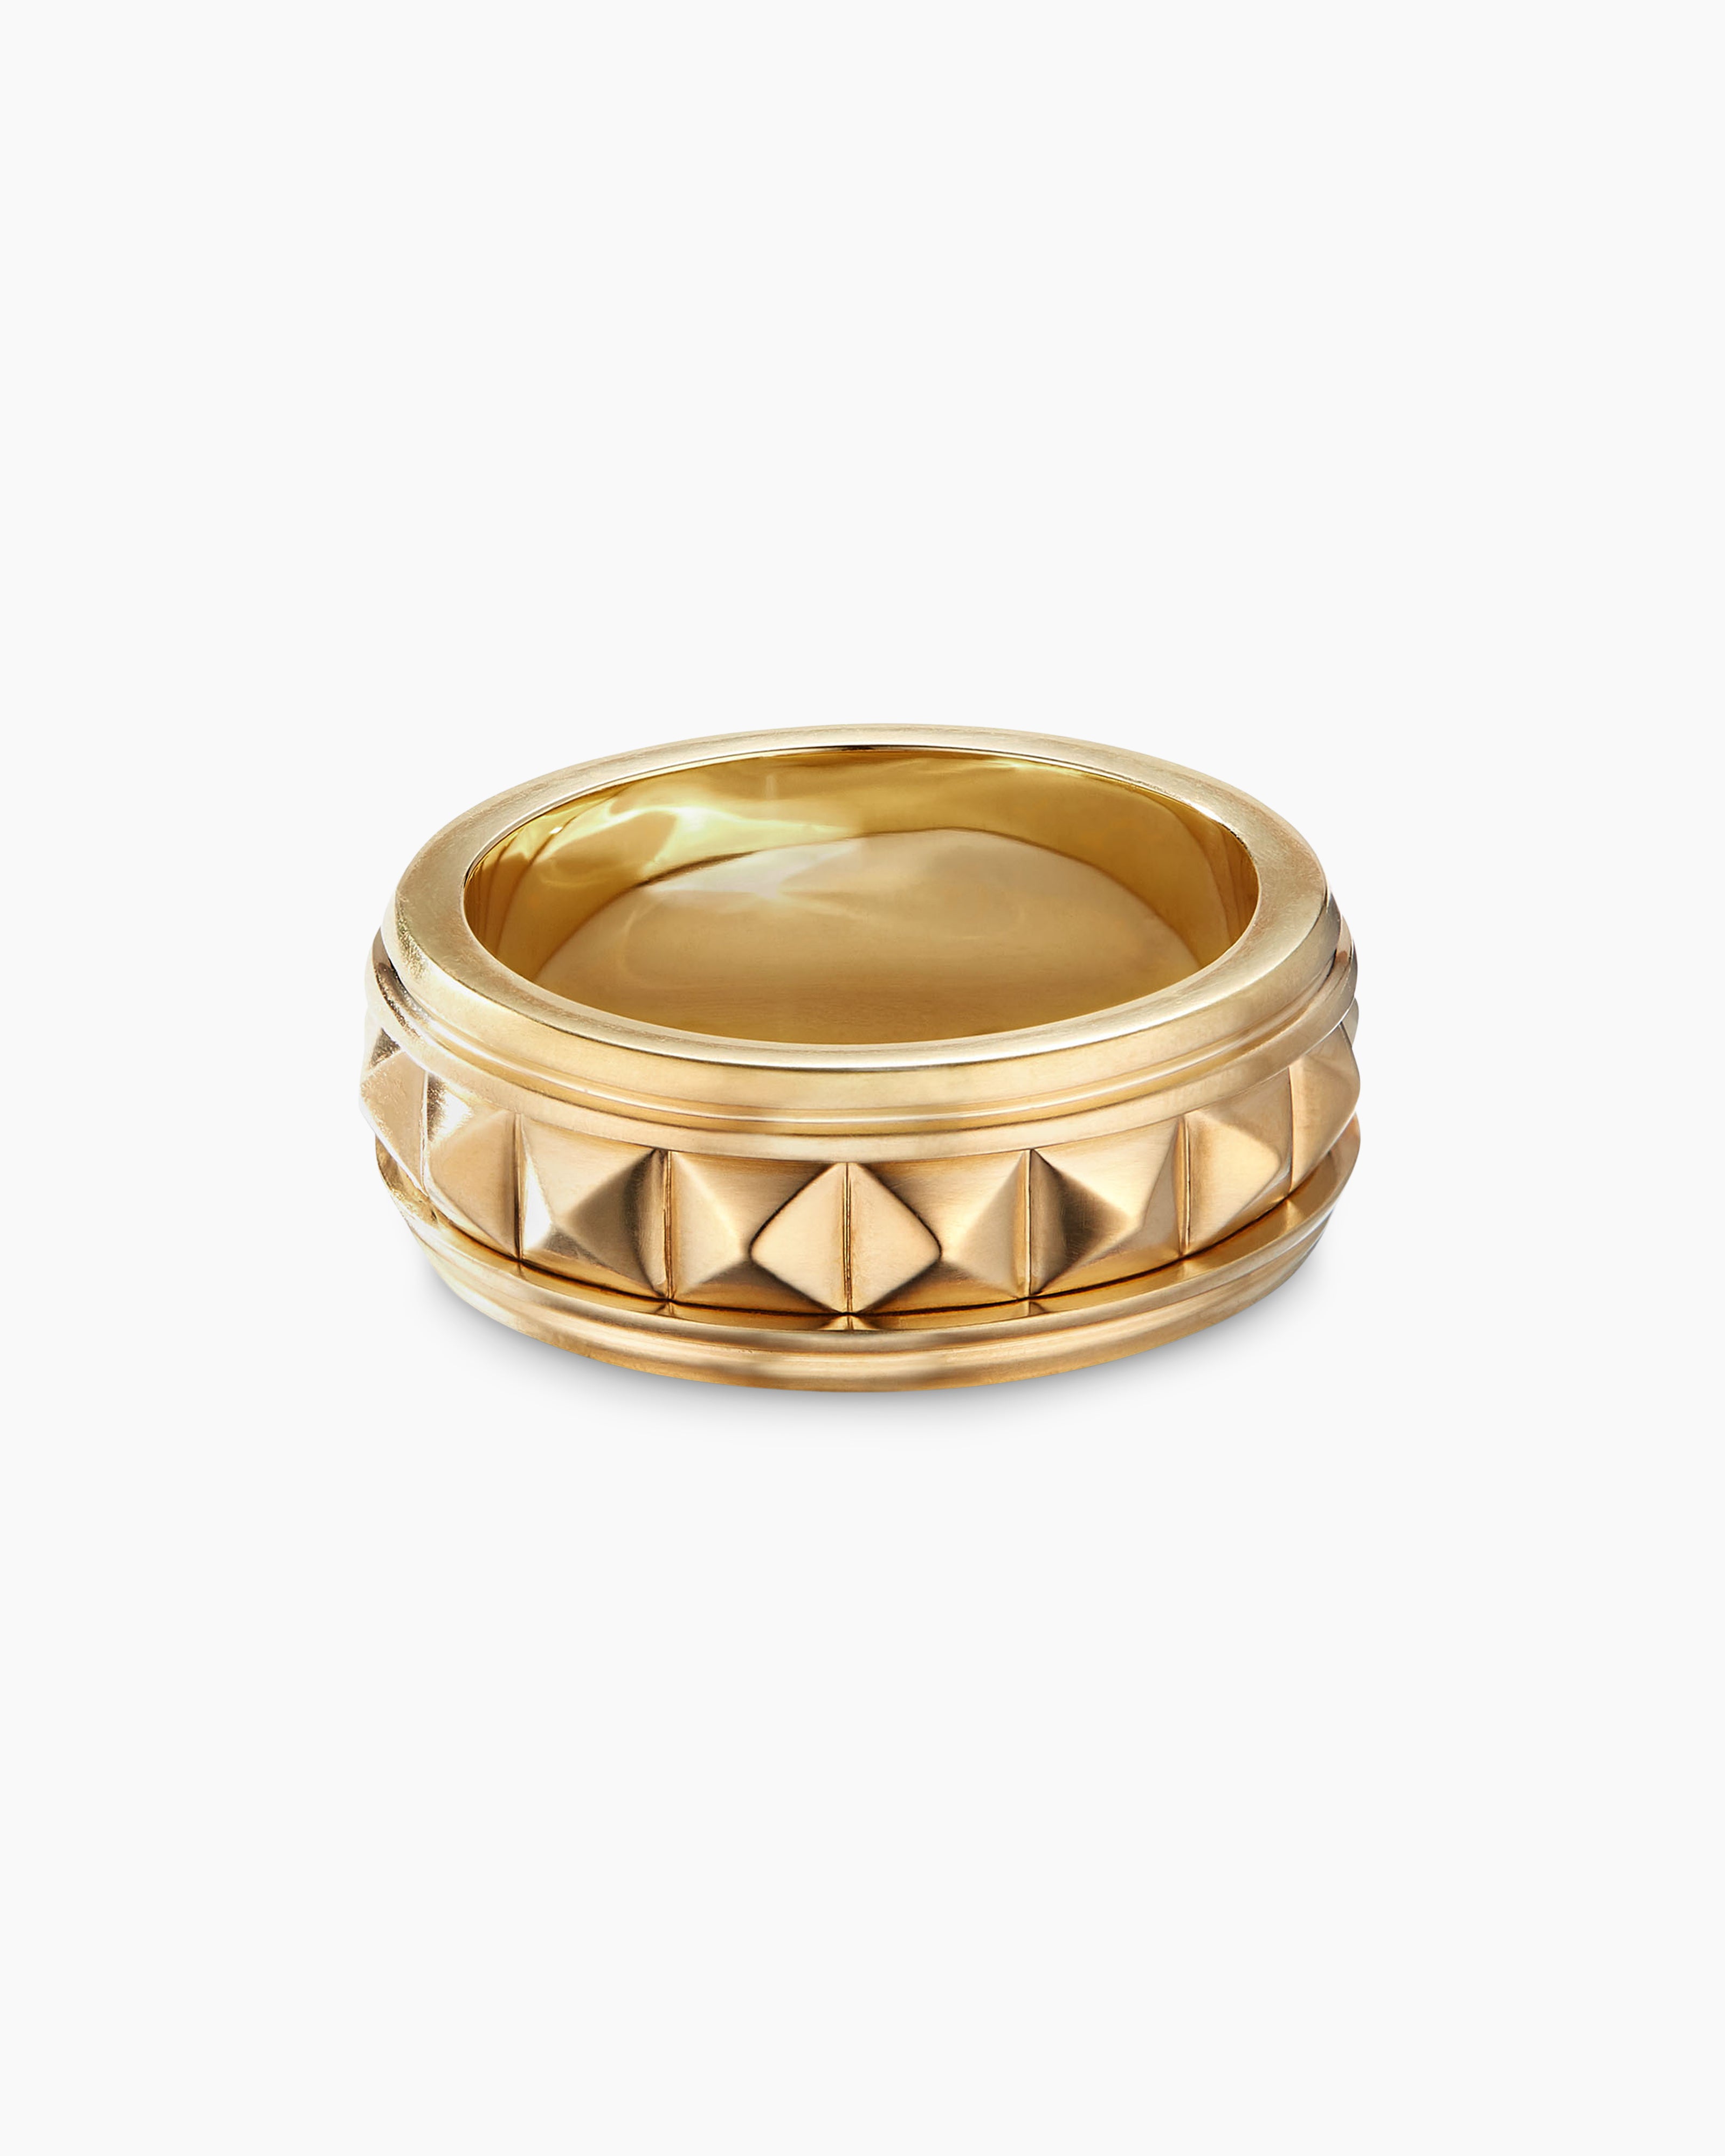 Engagement Rings For Men | Gold ring designs, White gold rings, Geometric  diamond ring